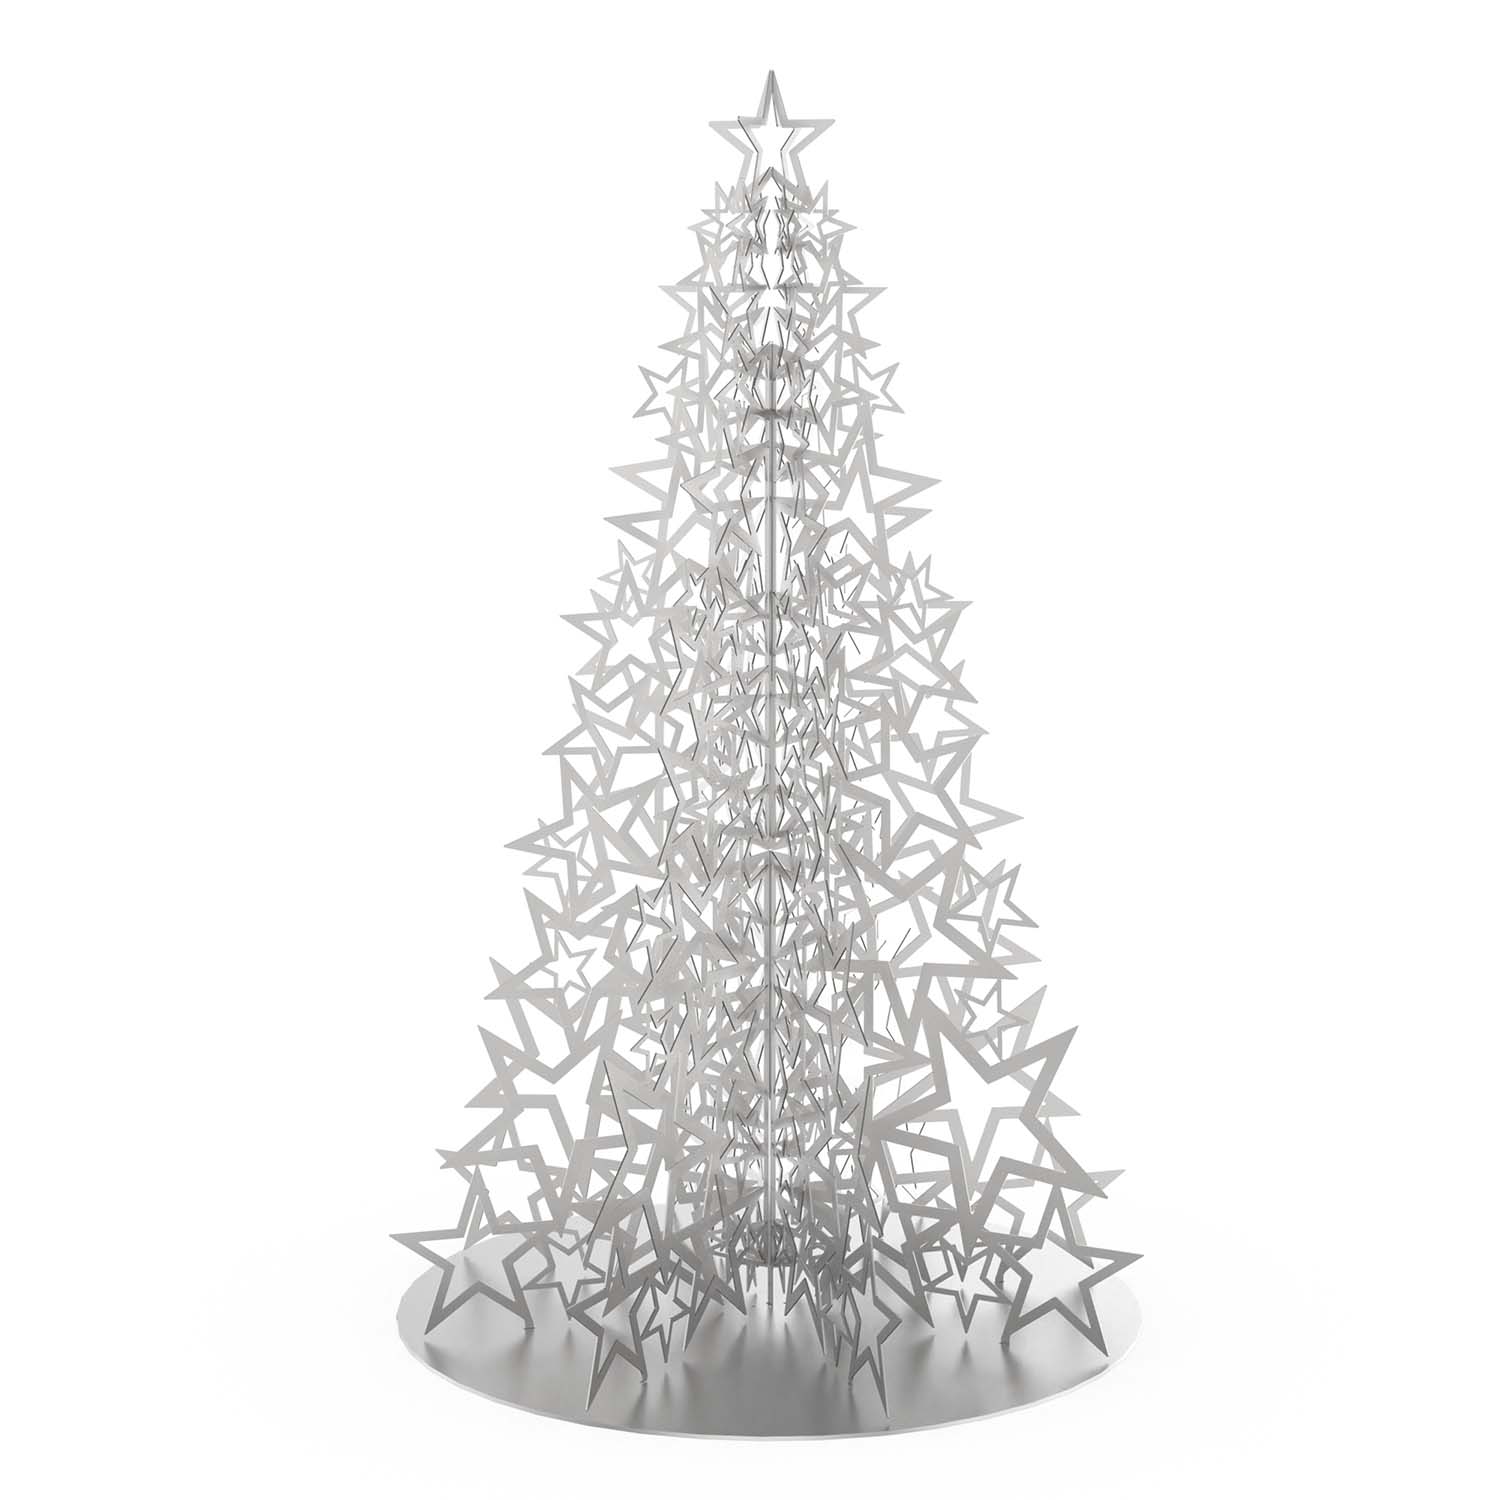 Weihnachtsbaum, steckbar, aus Aluminium, 100 x 100 x 150 cm